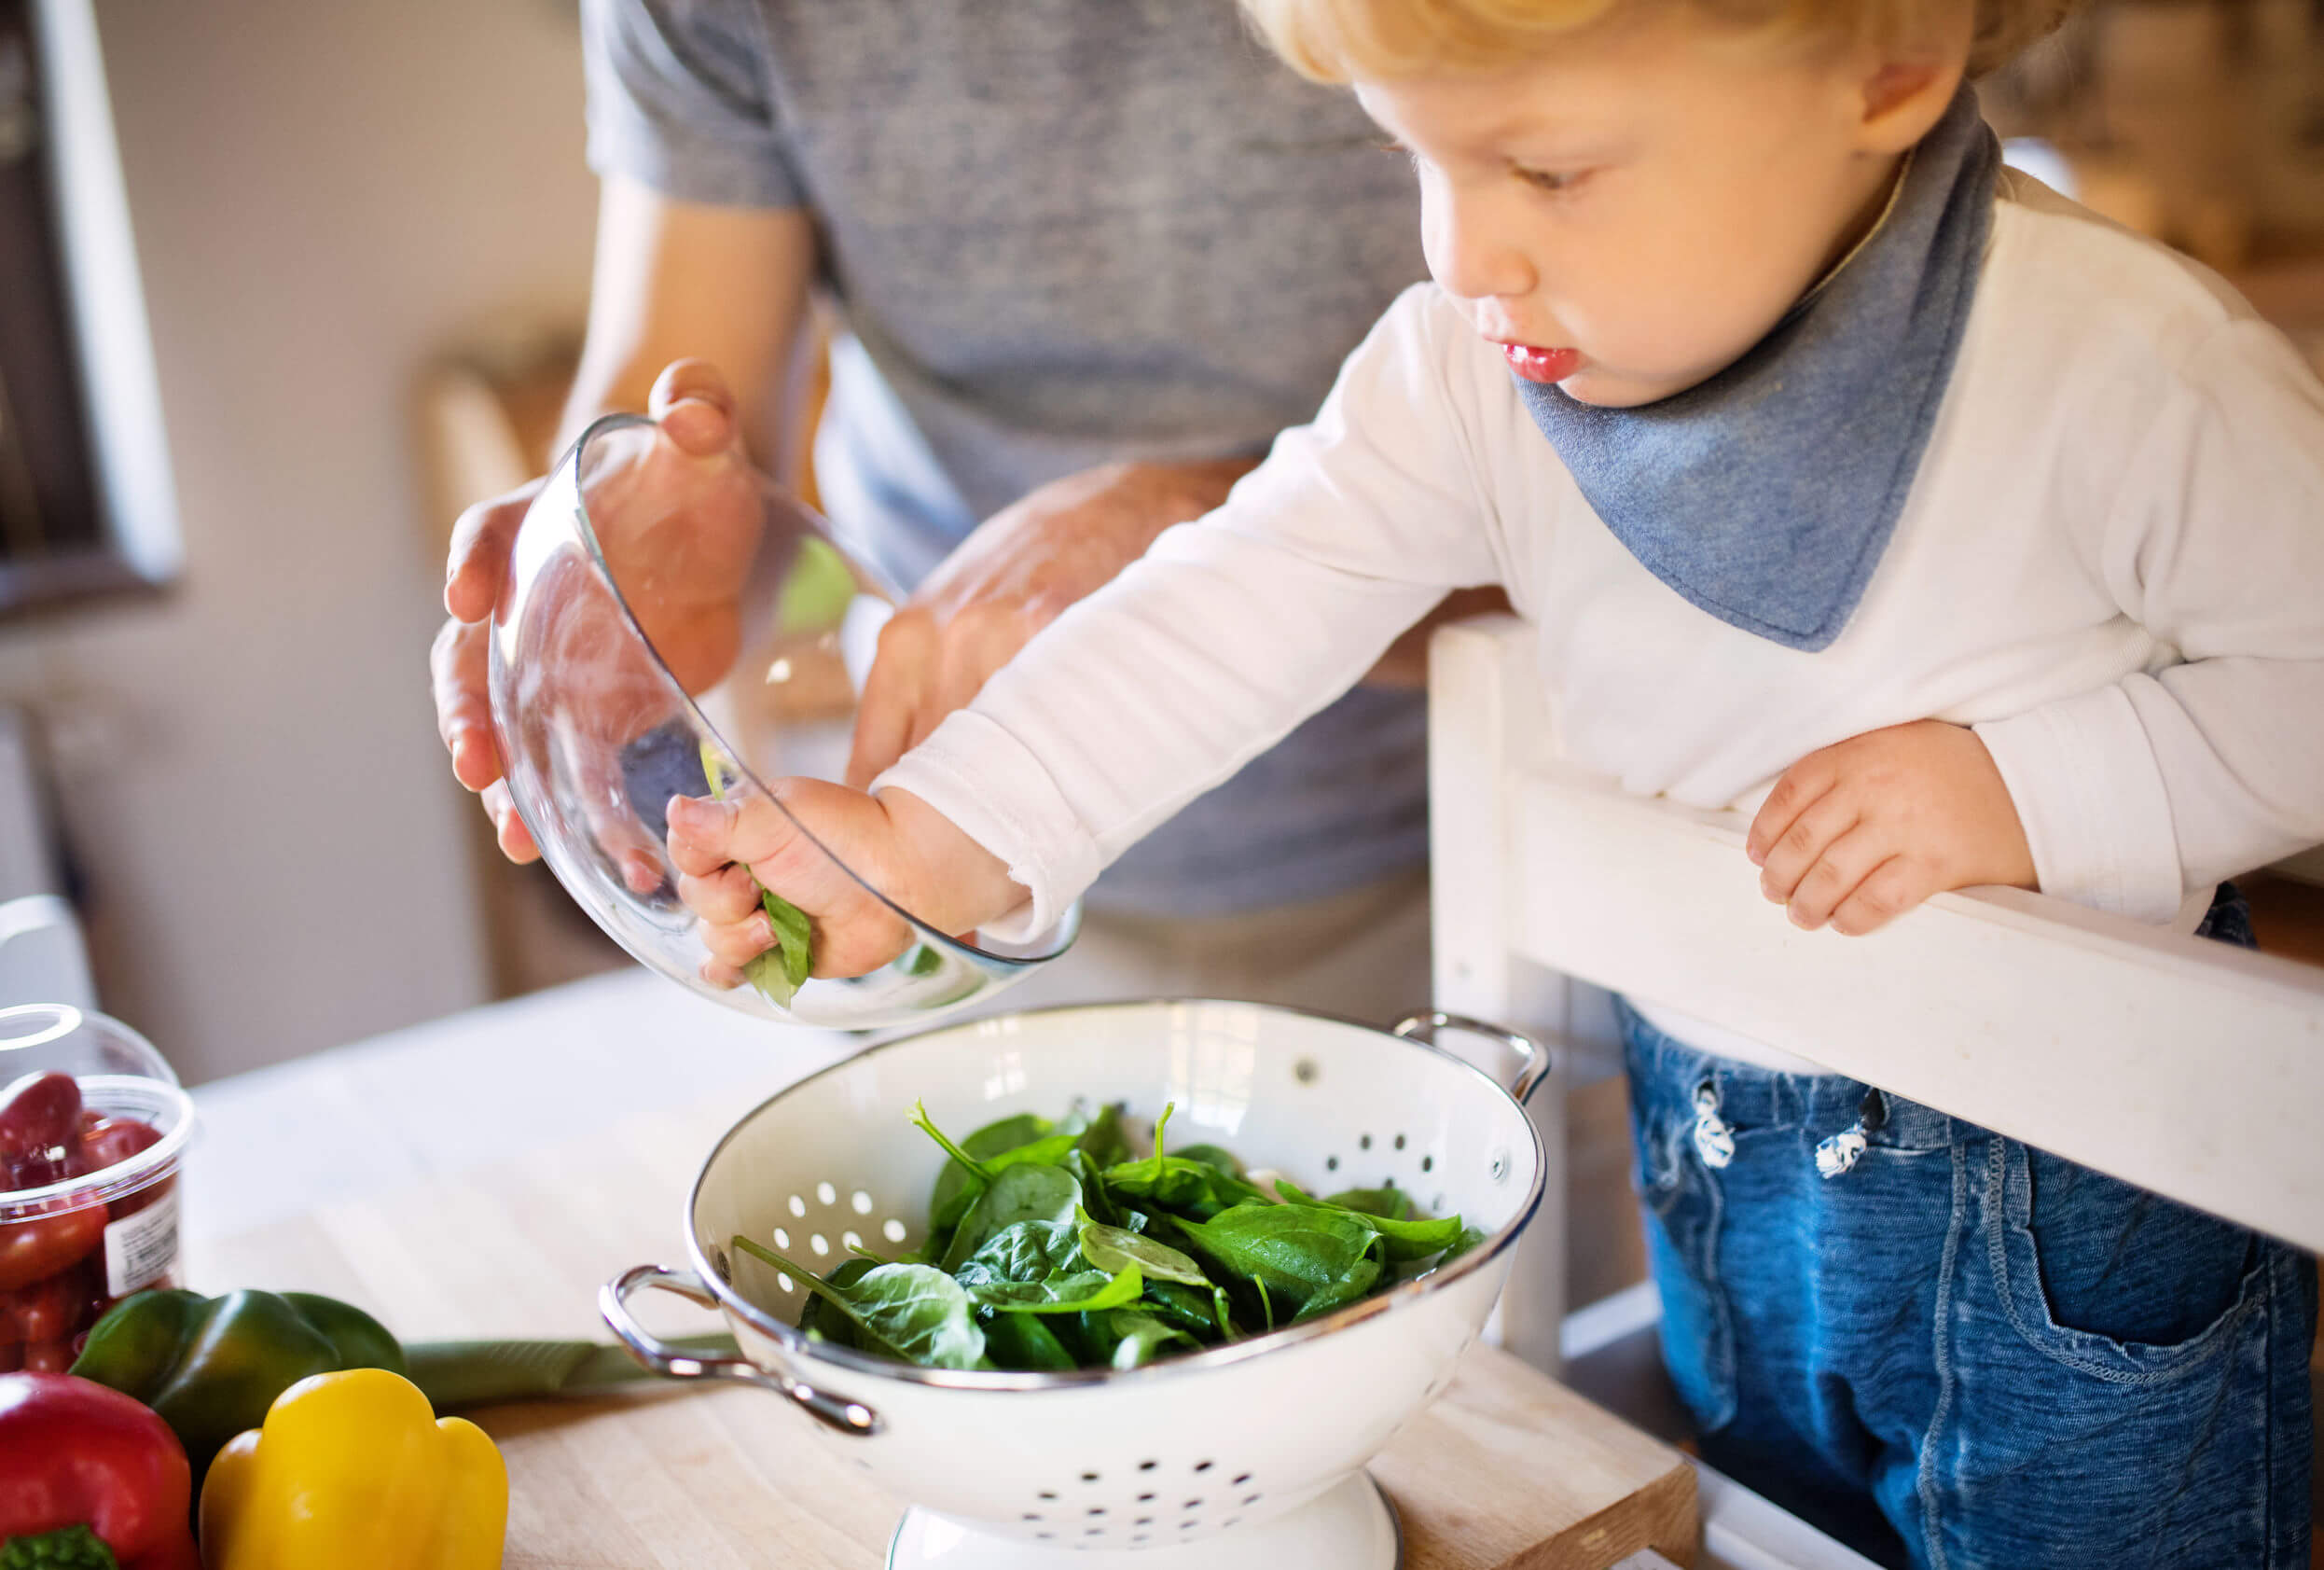 Niño ayudando a su padre en la cocina debido a los beneficios infantiles que tienen cocinar con los padres.